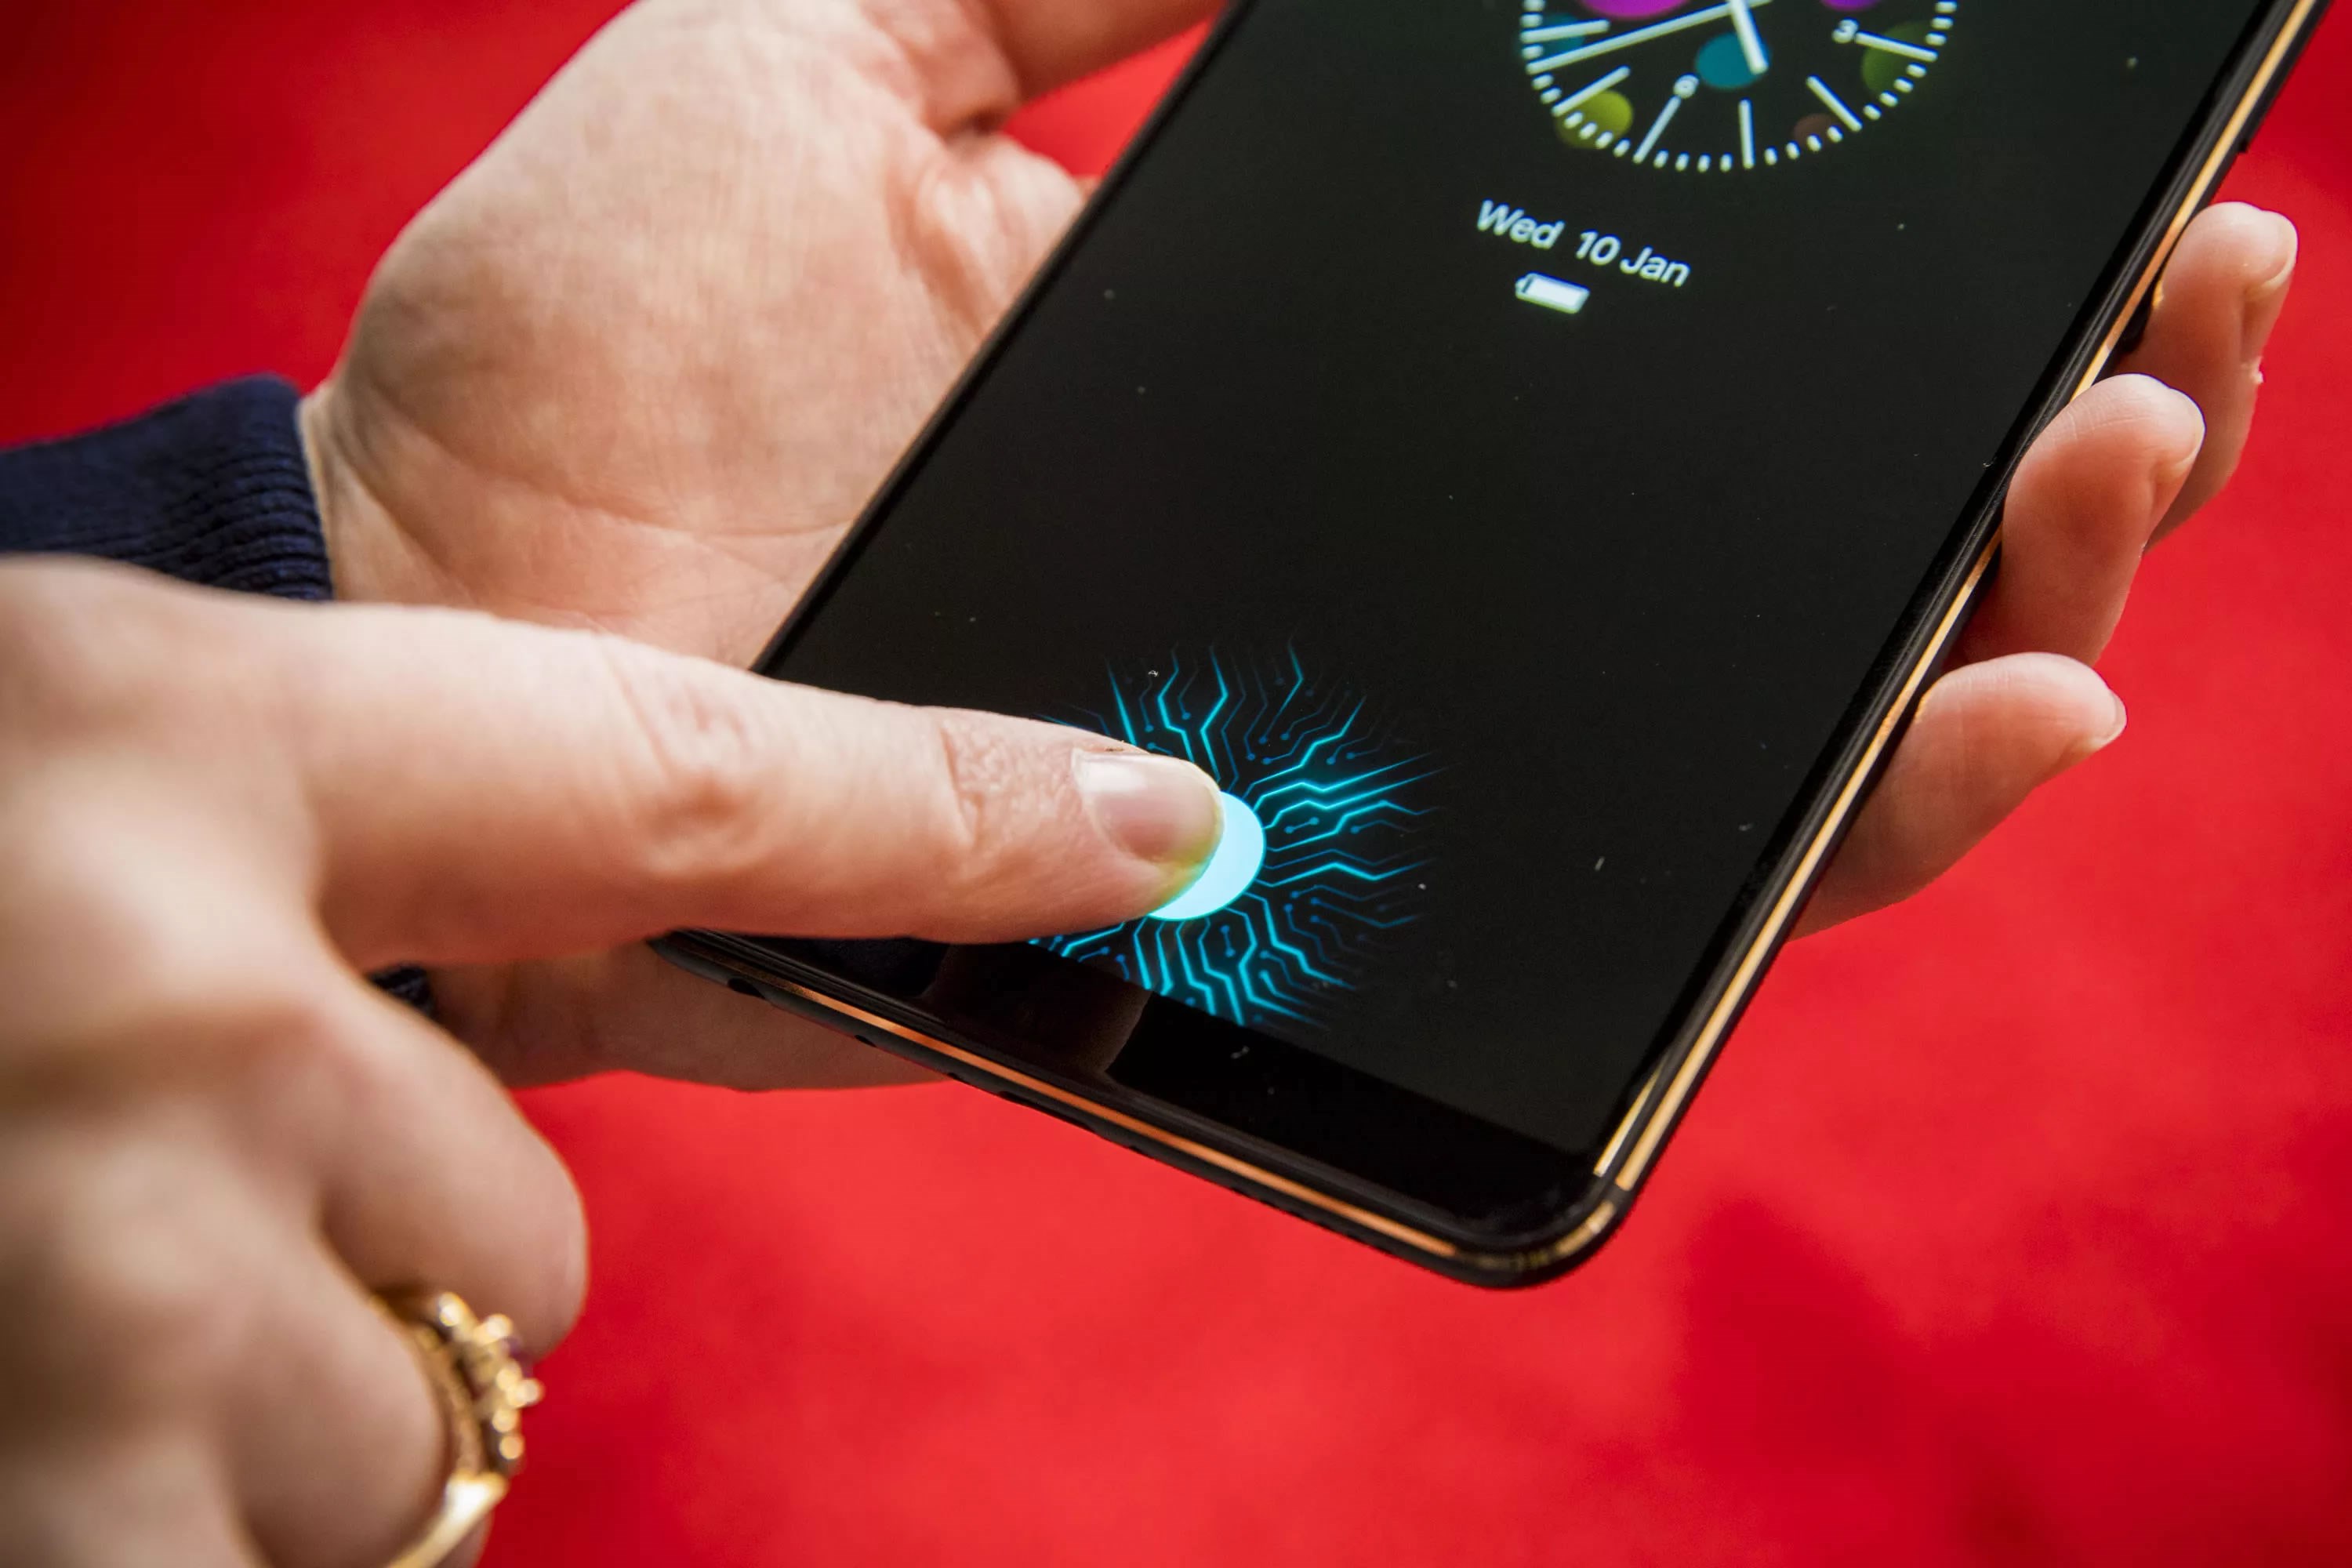 Ekrana gömülü parmak izi sensörü pazarı 2019'da 8 kat büyüdü